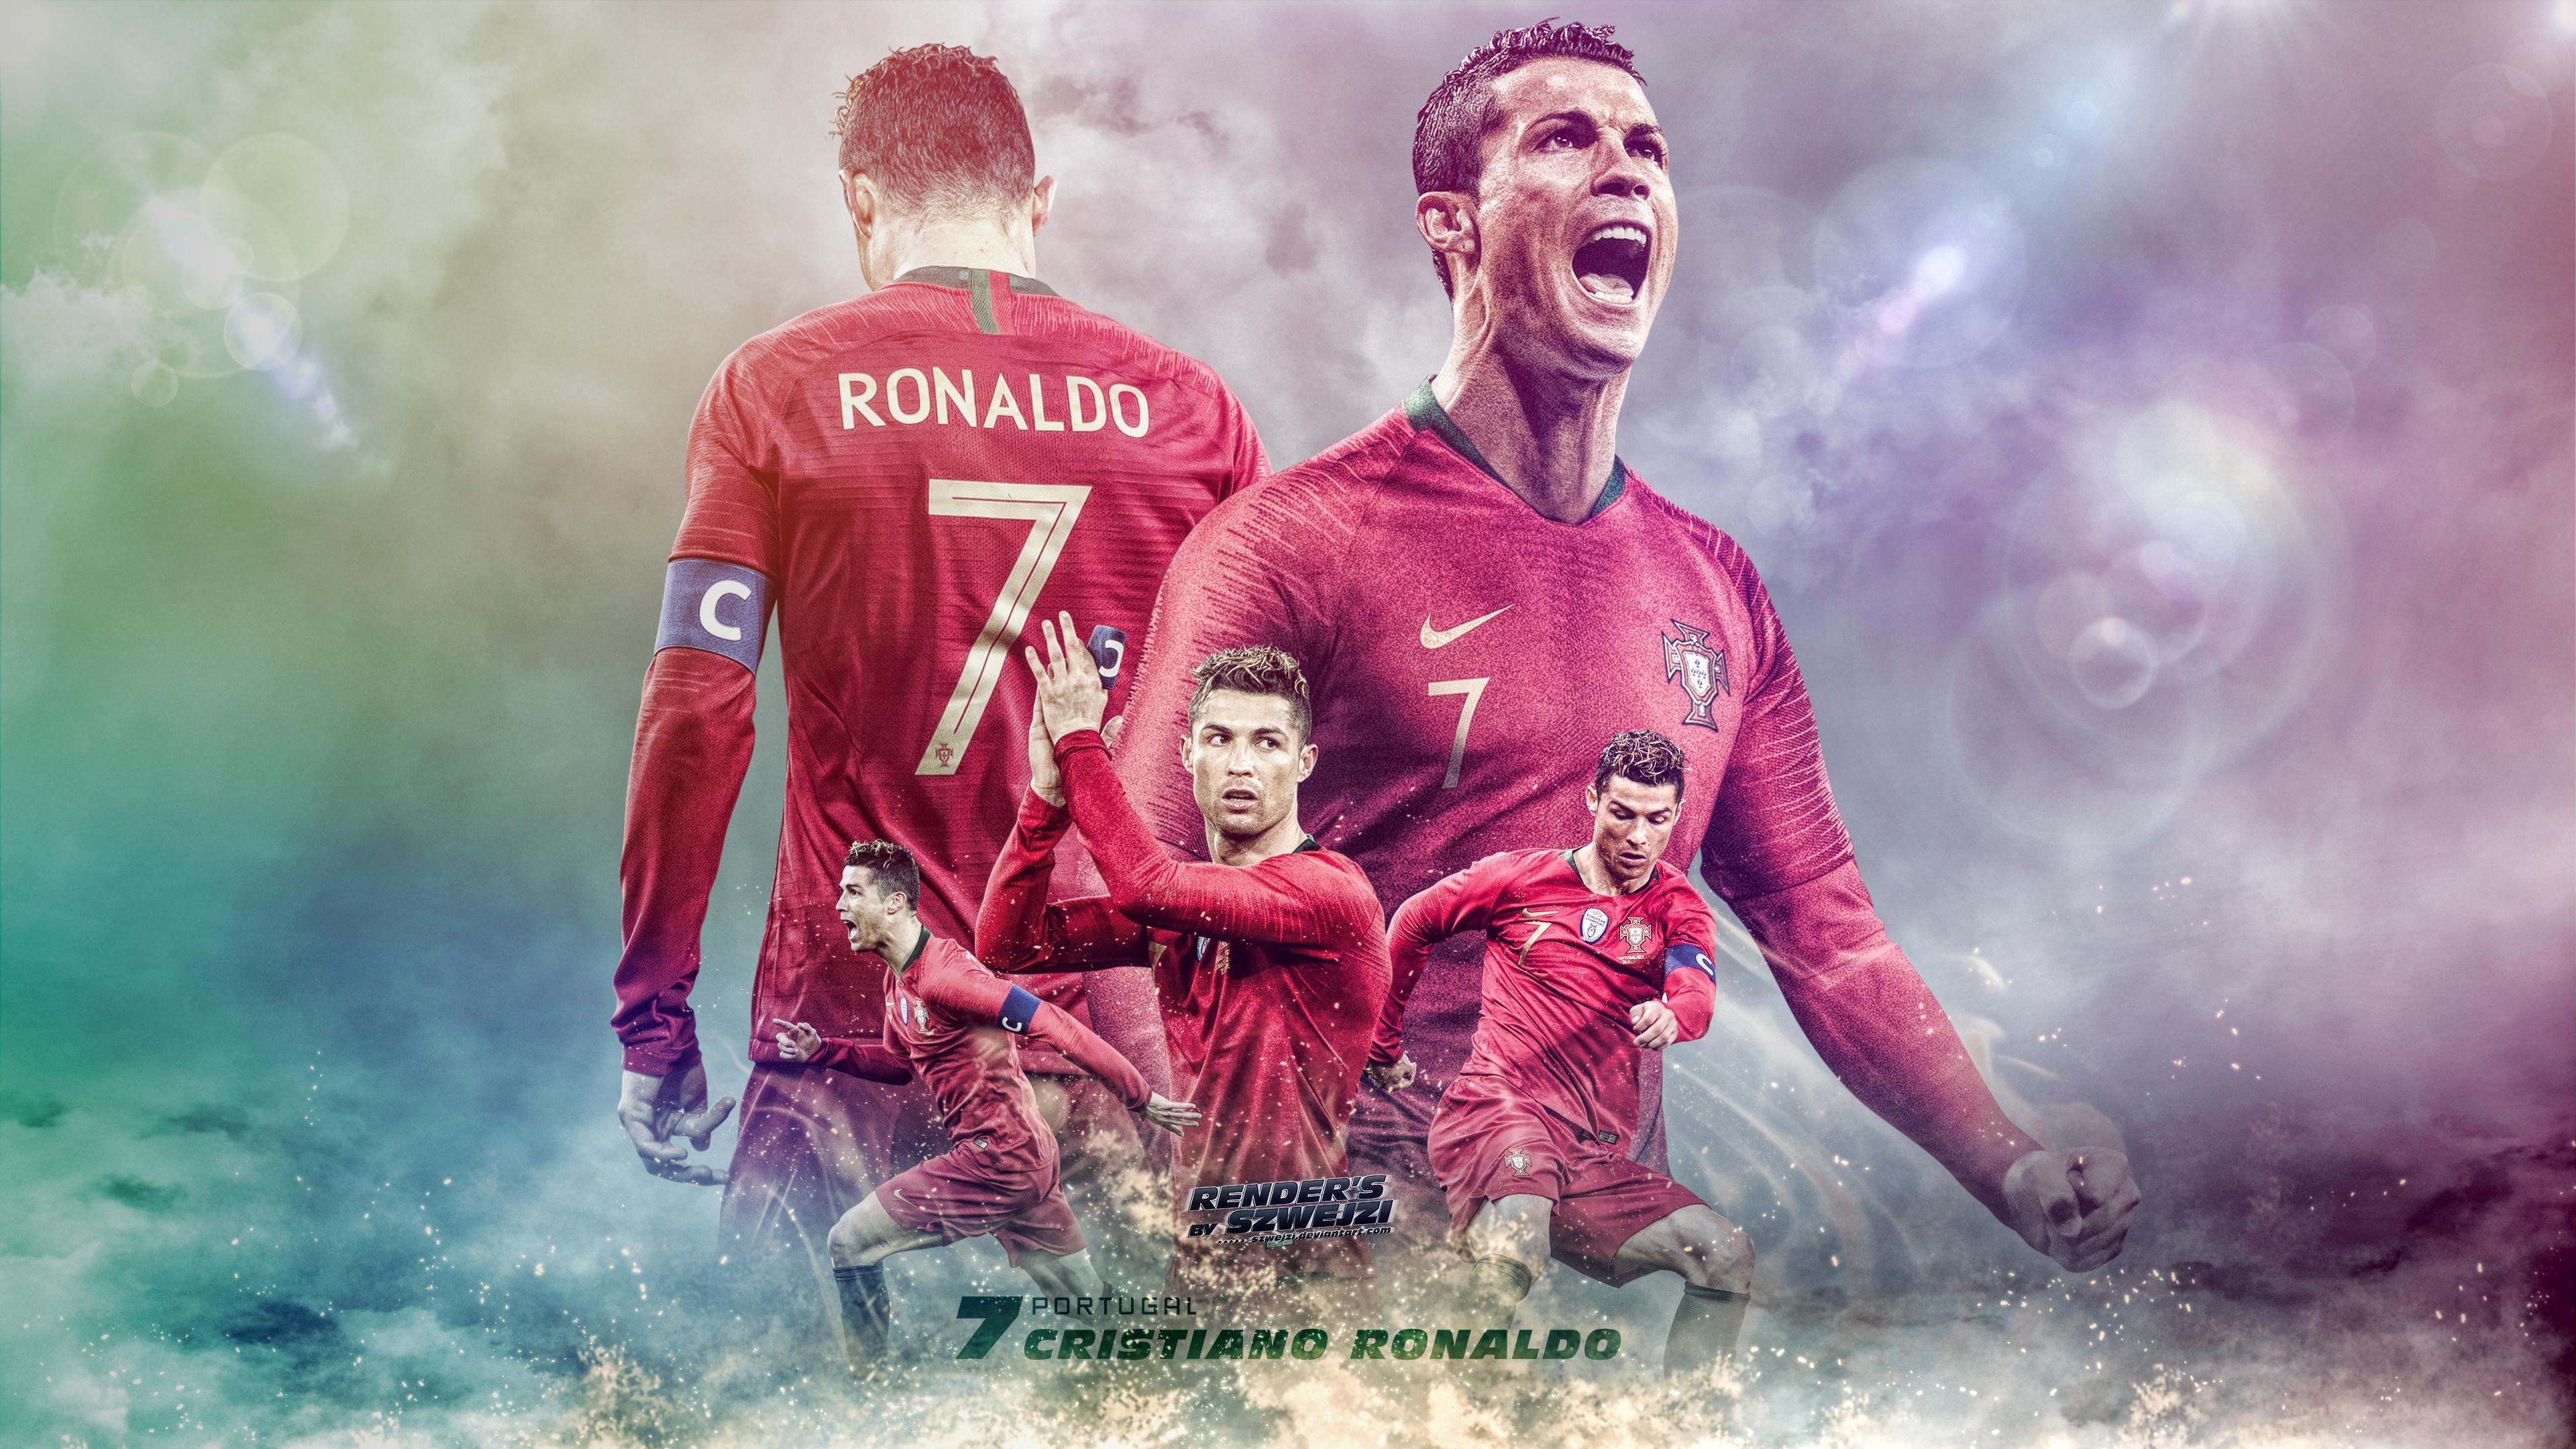 Cristiano Ronaldo, 4k Wallpapers: Một bộ sưu tập 4K wallpapers đẹp mắt với những bức hình chất lượng nhất của Cristiano Ronaldo. Cùng trải nghiệm sự nghiệp bóng đá vĩ đại của anh ta ngay trên màn hình của bạn.